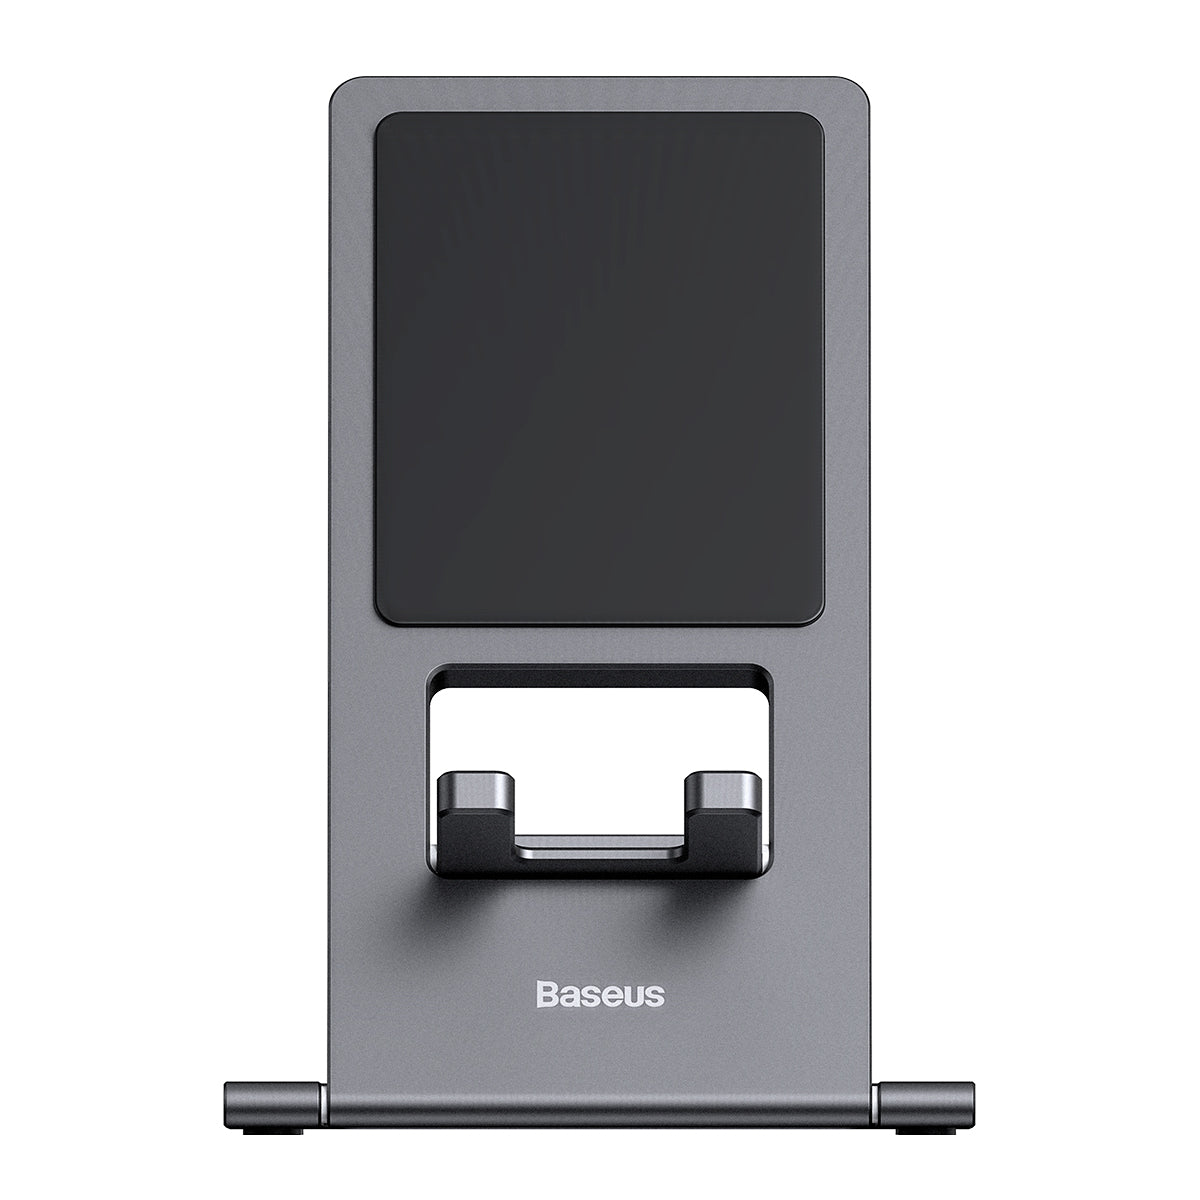 Baseus Foldable Metal Desktop Tablet and Smartphone Holder